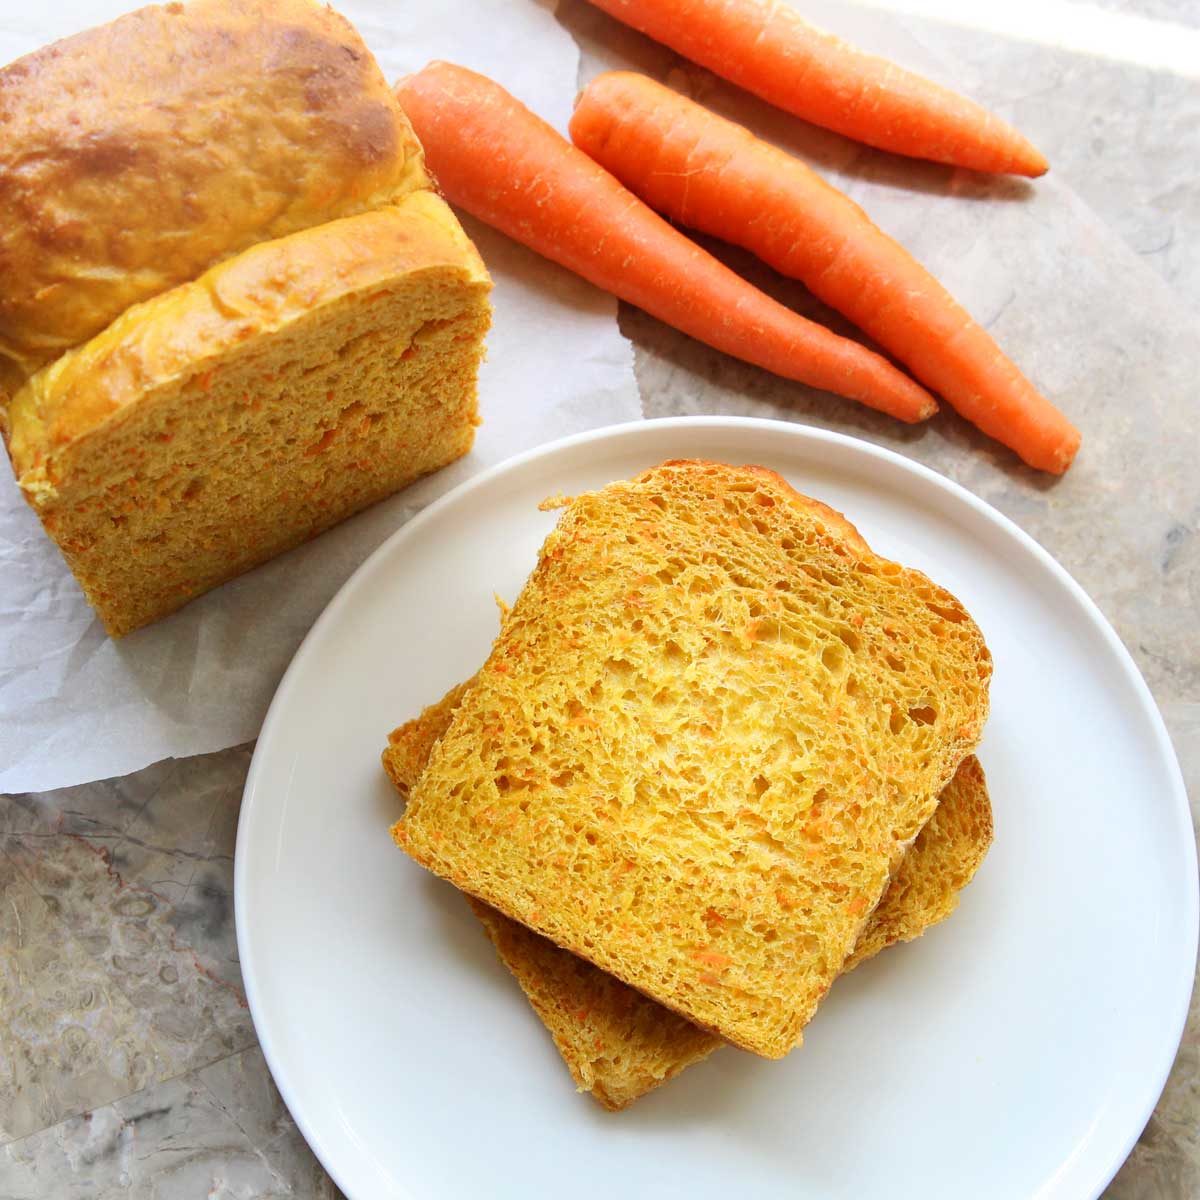 carrot sandwich bread recipe (yeast bread) 